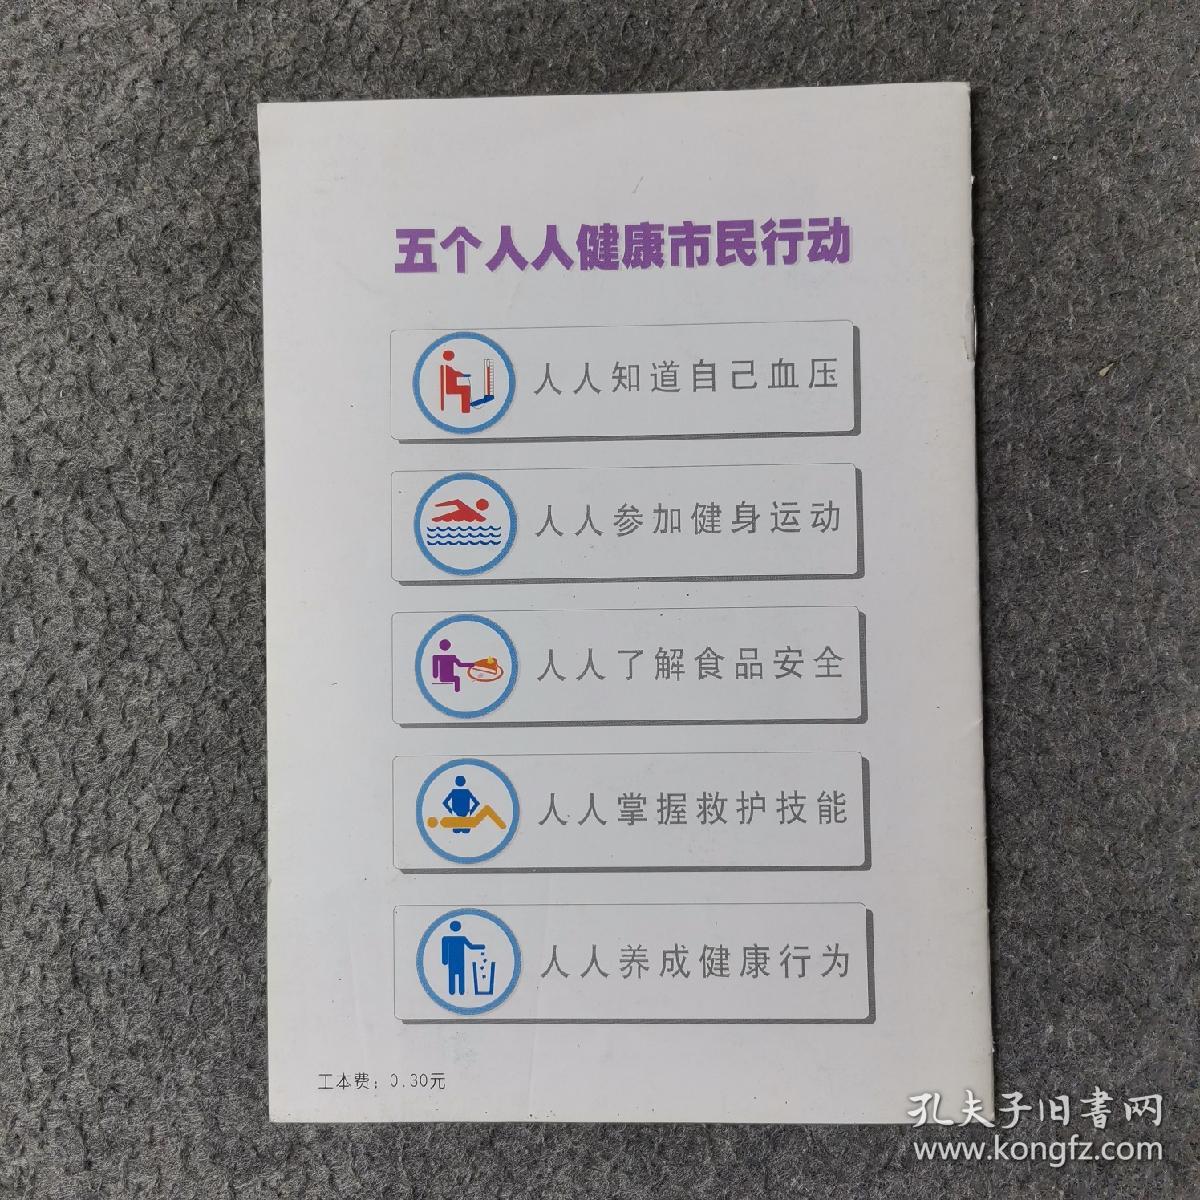 上海市建设健康城市五个人人健康市民行动
核心知识手册